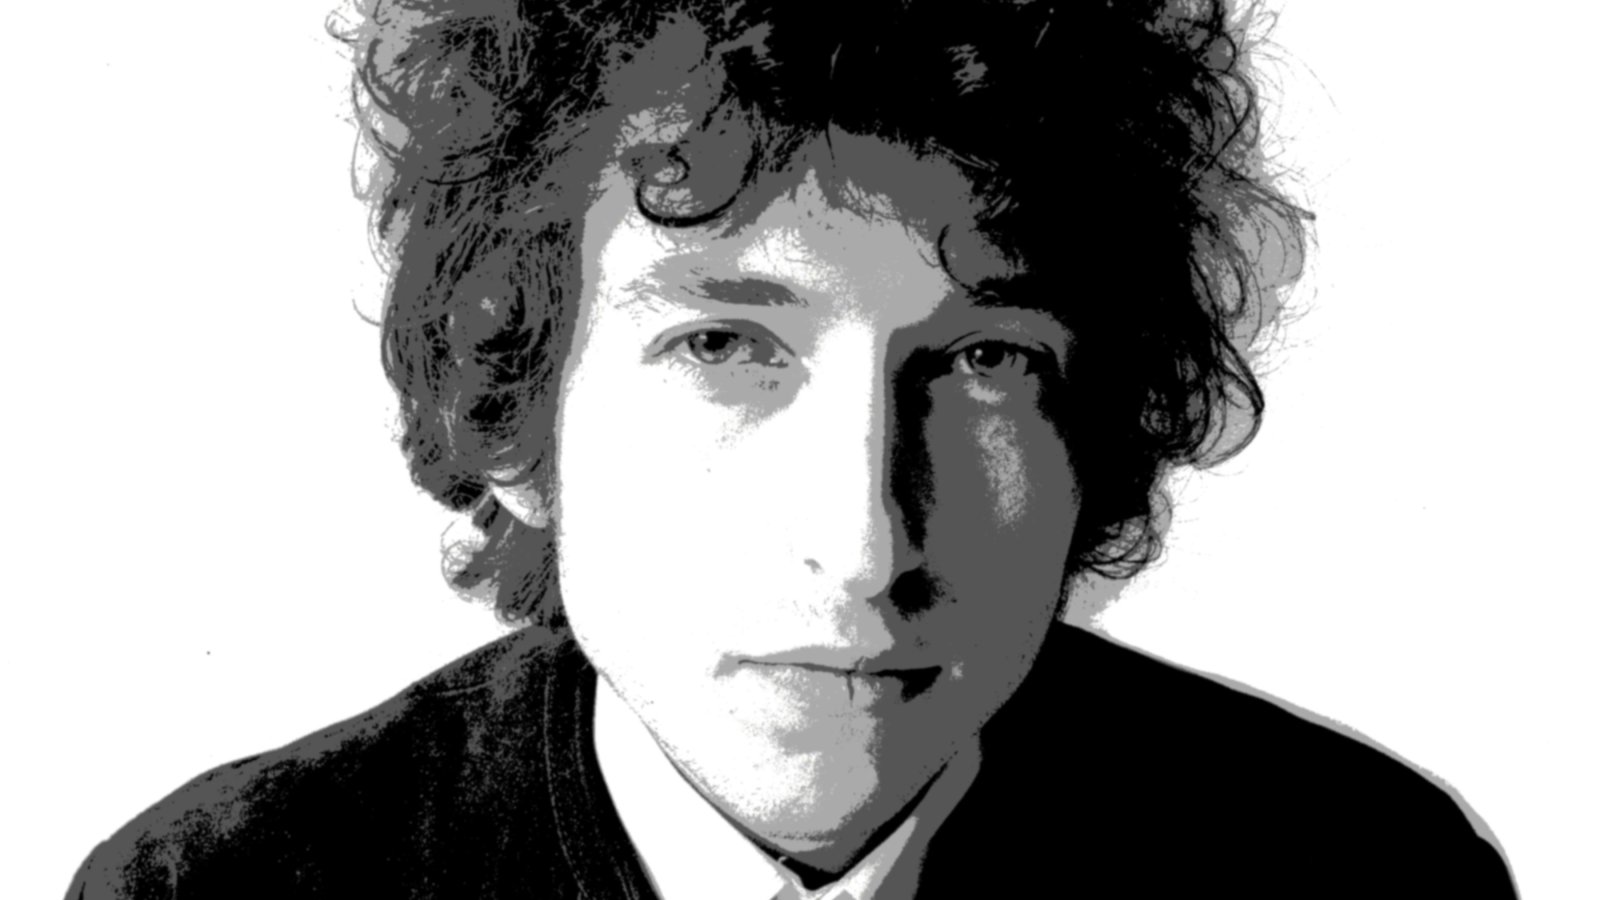 Aldrig for gammel til at se godt ud – opdag Bob Dylans hemmelighed og hans stil